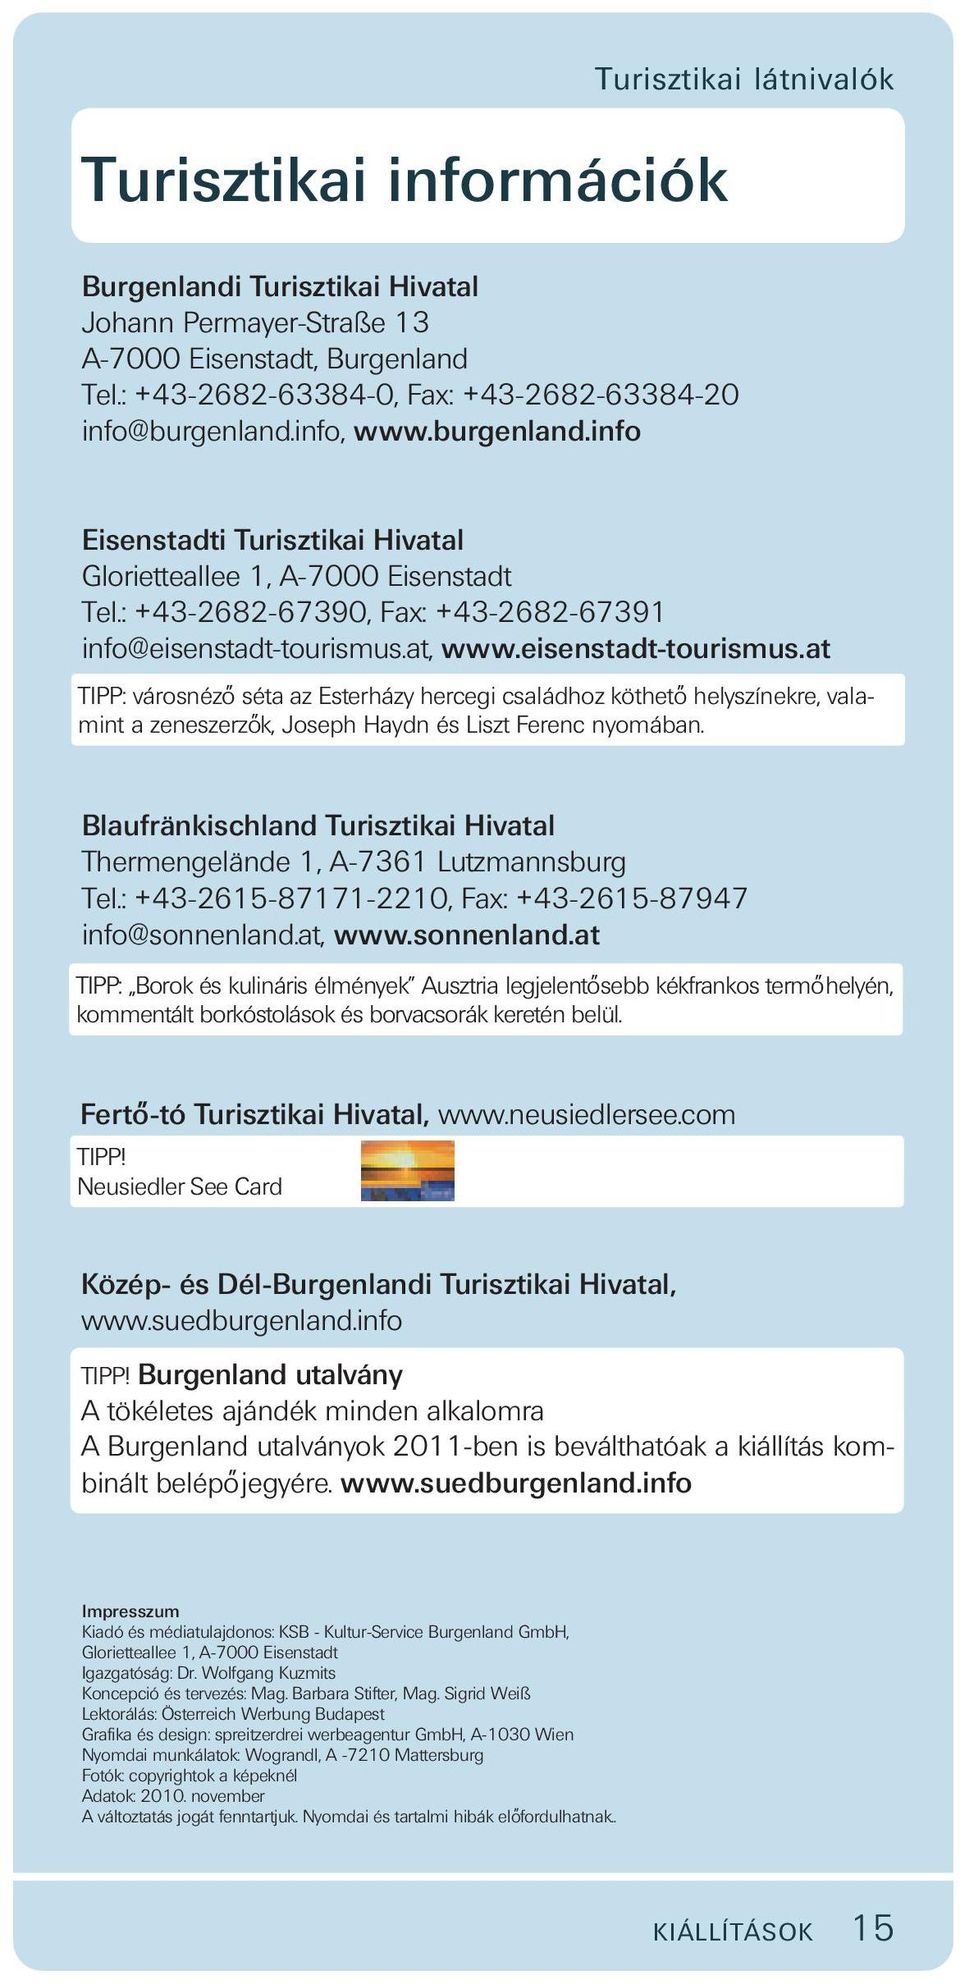 at, www.eisenstadt-tourismus.at TIPP: városnézo séta az Esterházy hercegi családhoz kötheto helyszínekre, valamint a zeneszerzo k, Joseph Haydn és Liszt Ferenc nyomában.